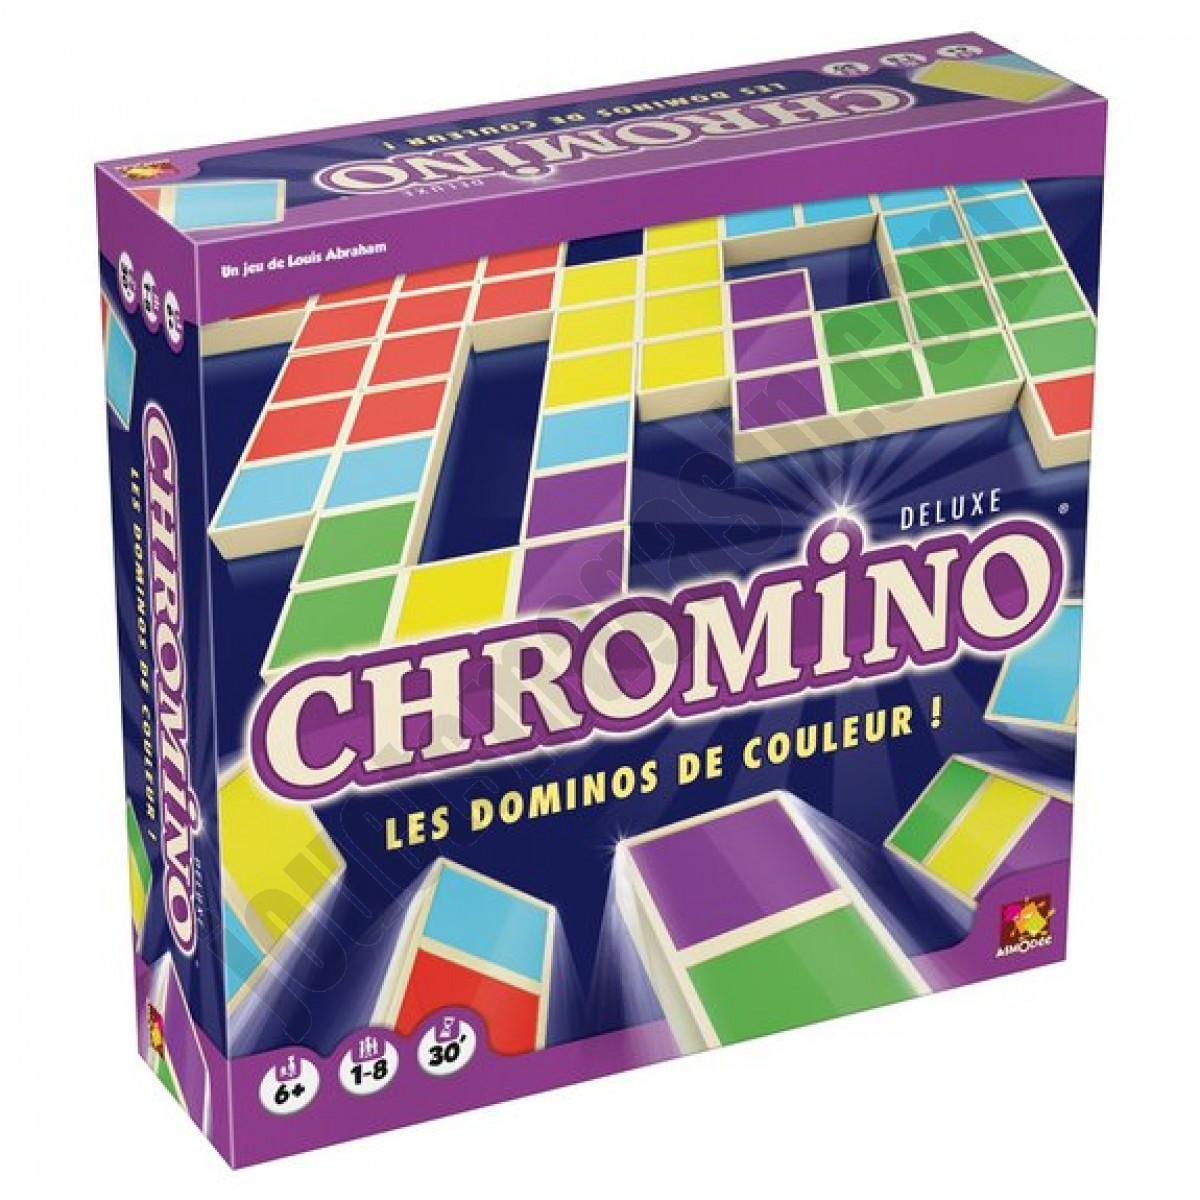 Chromino Deluxe En promotion - Chromino Deluxe En promotion